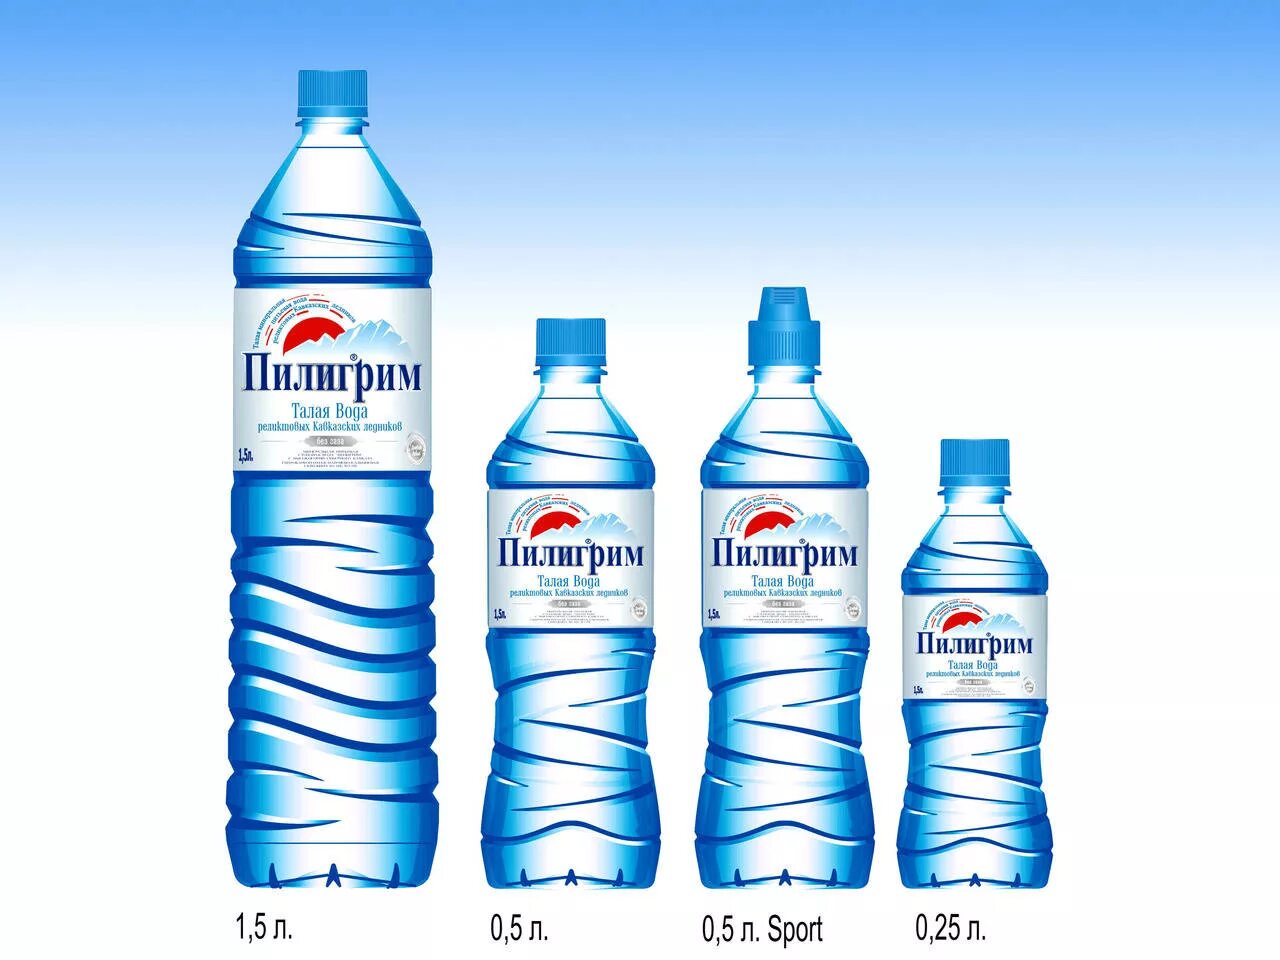 3 л воды. 1,5 Литров воды. 1 Литровая бутылка воды. Бутылка воды 1.5 литра. Популярные марки воды.